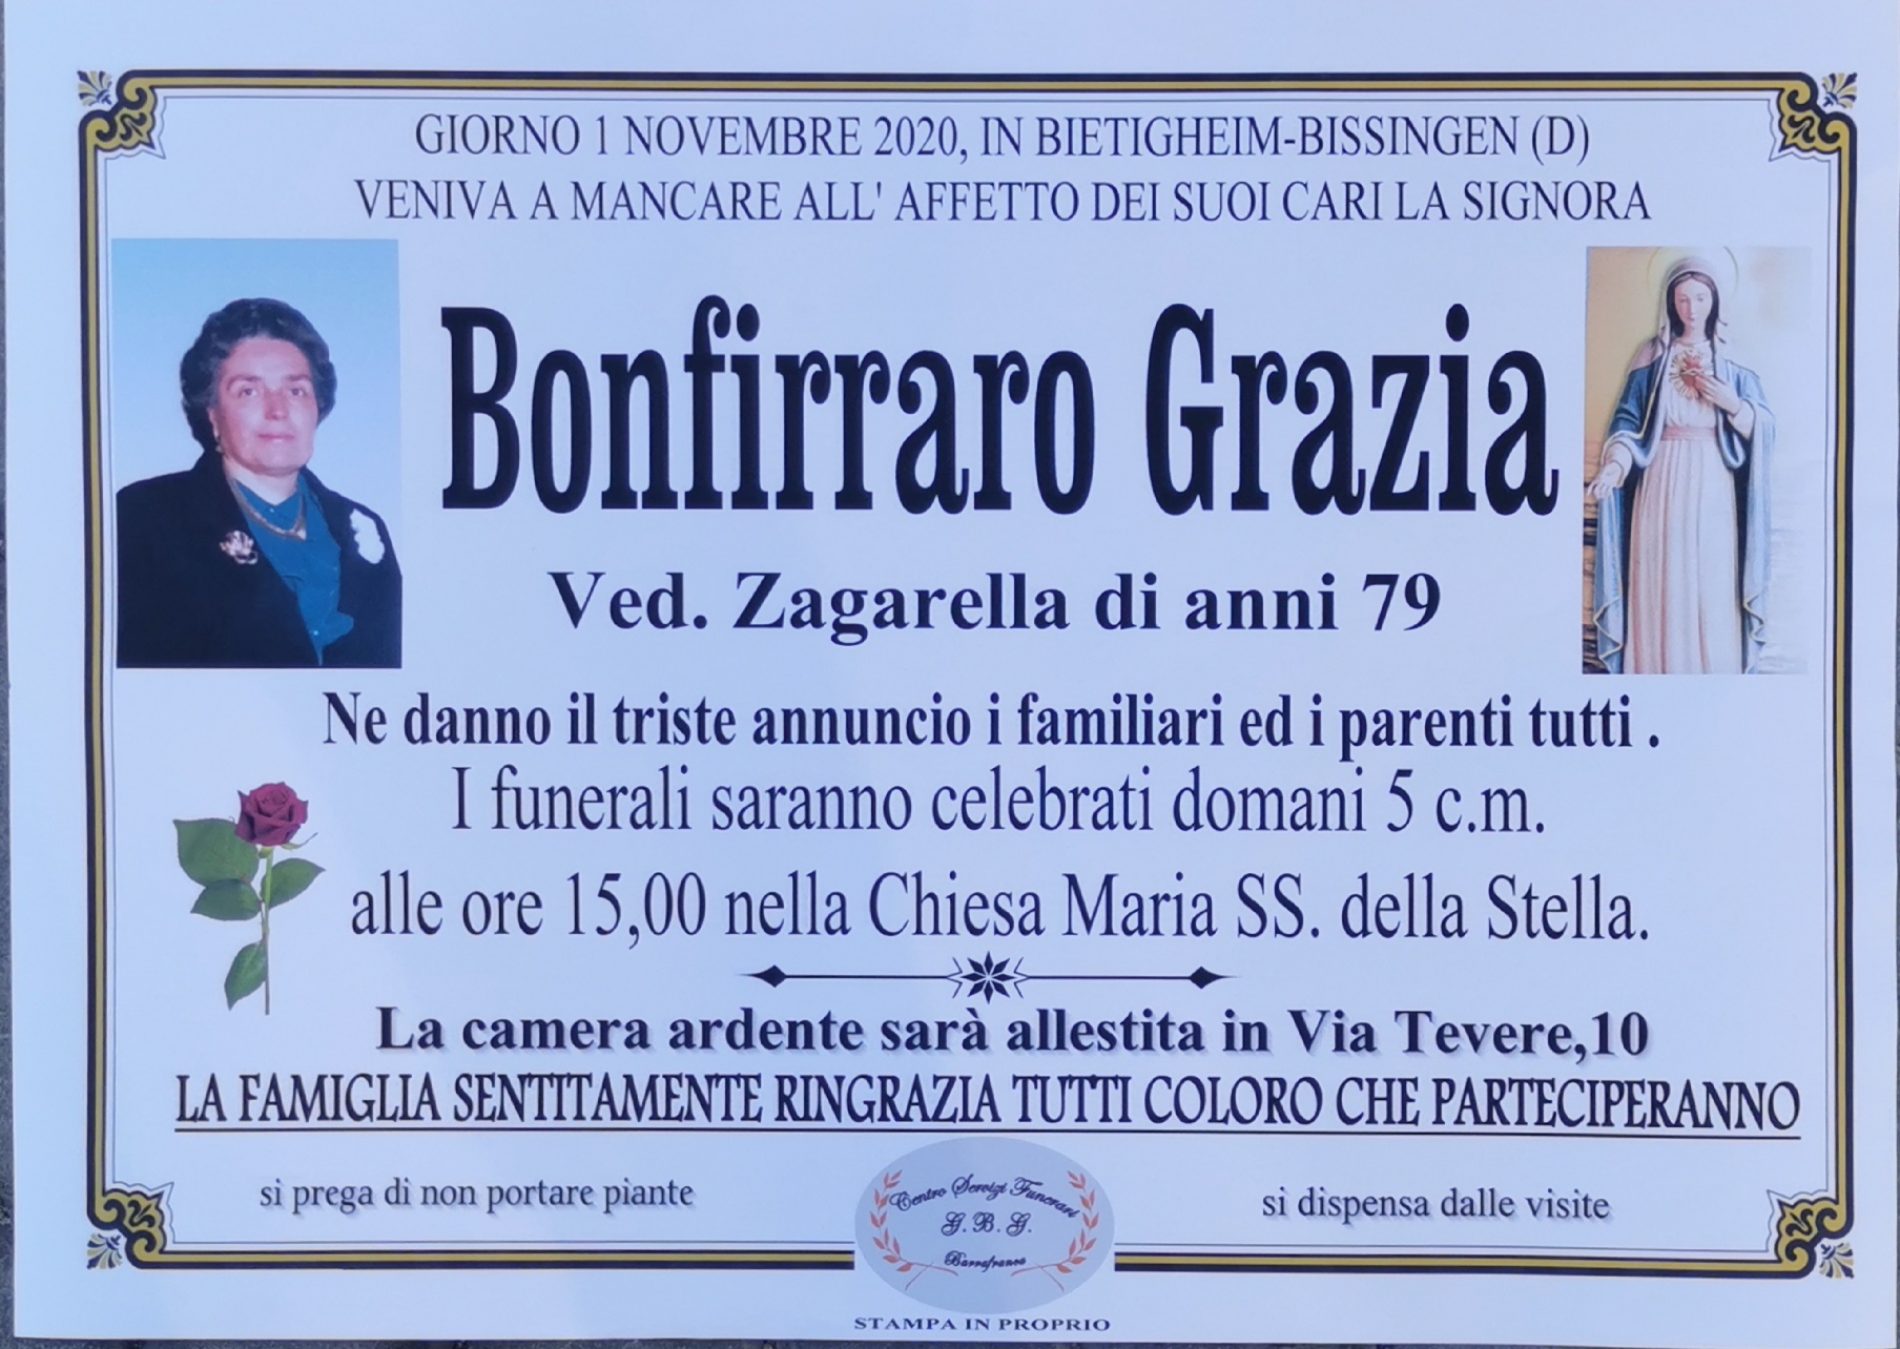 Annuncio agenzia servizi funerari G.B.G. sig.ra Bonfirraro Grazia ved Zagarella anni 79